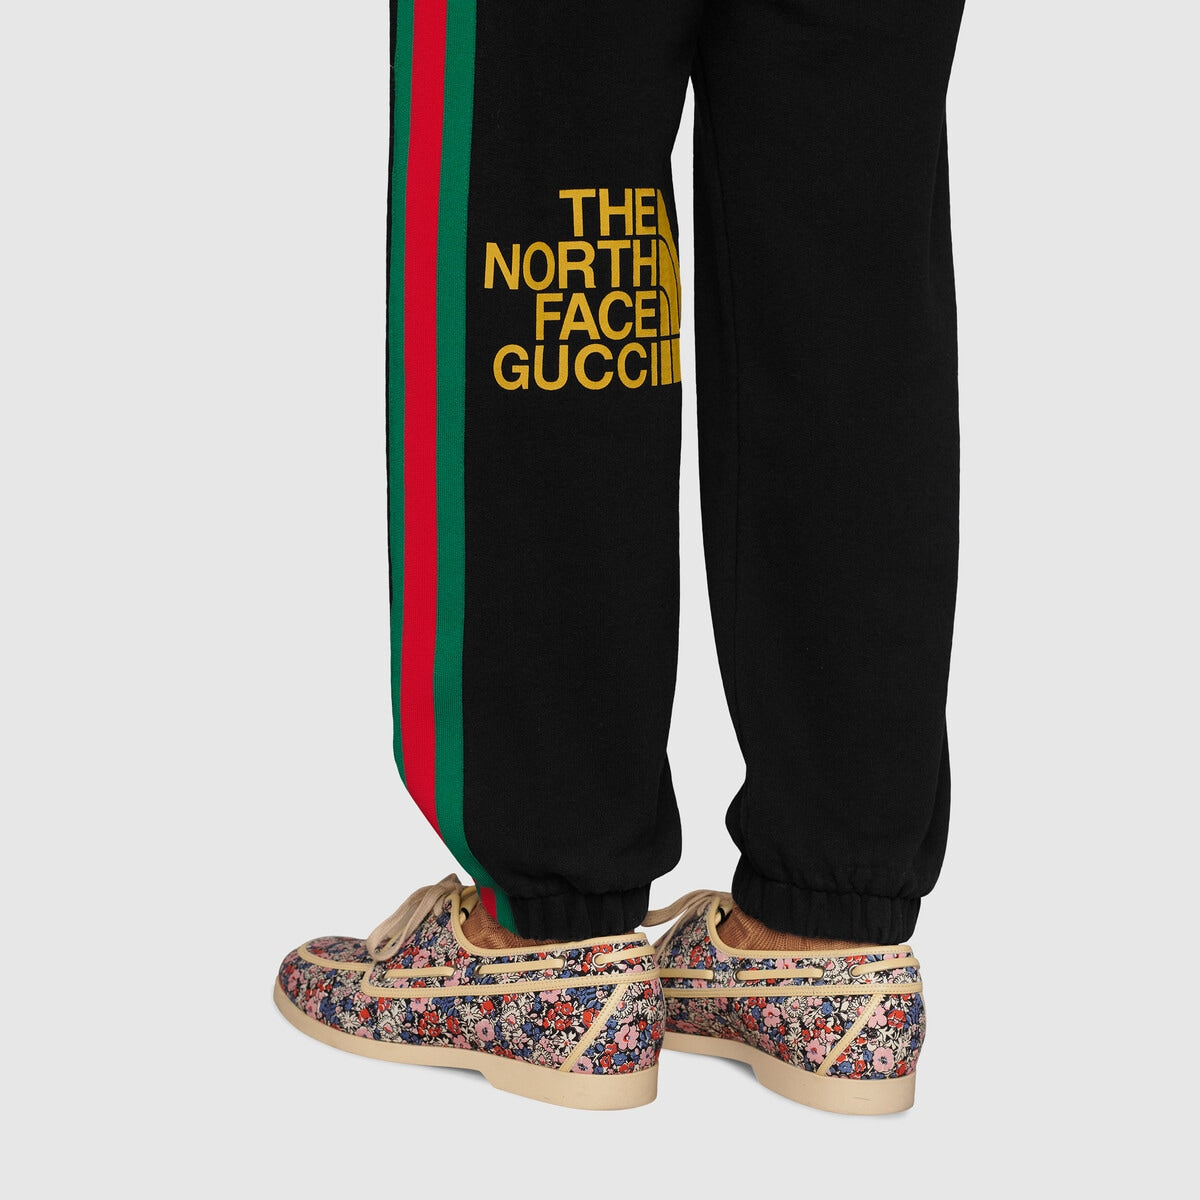 The North Face x Gucci Men's Plain Trouser